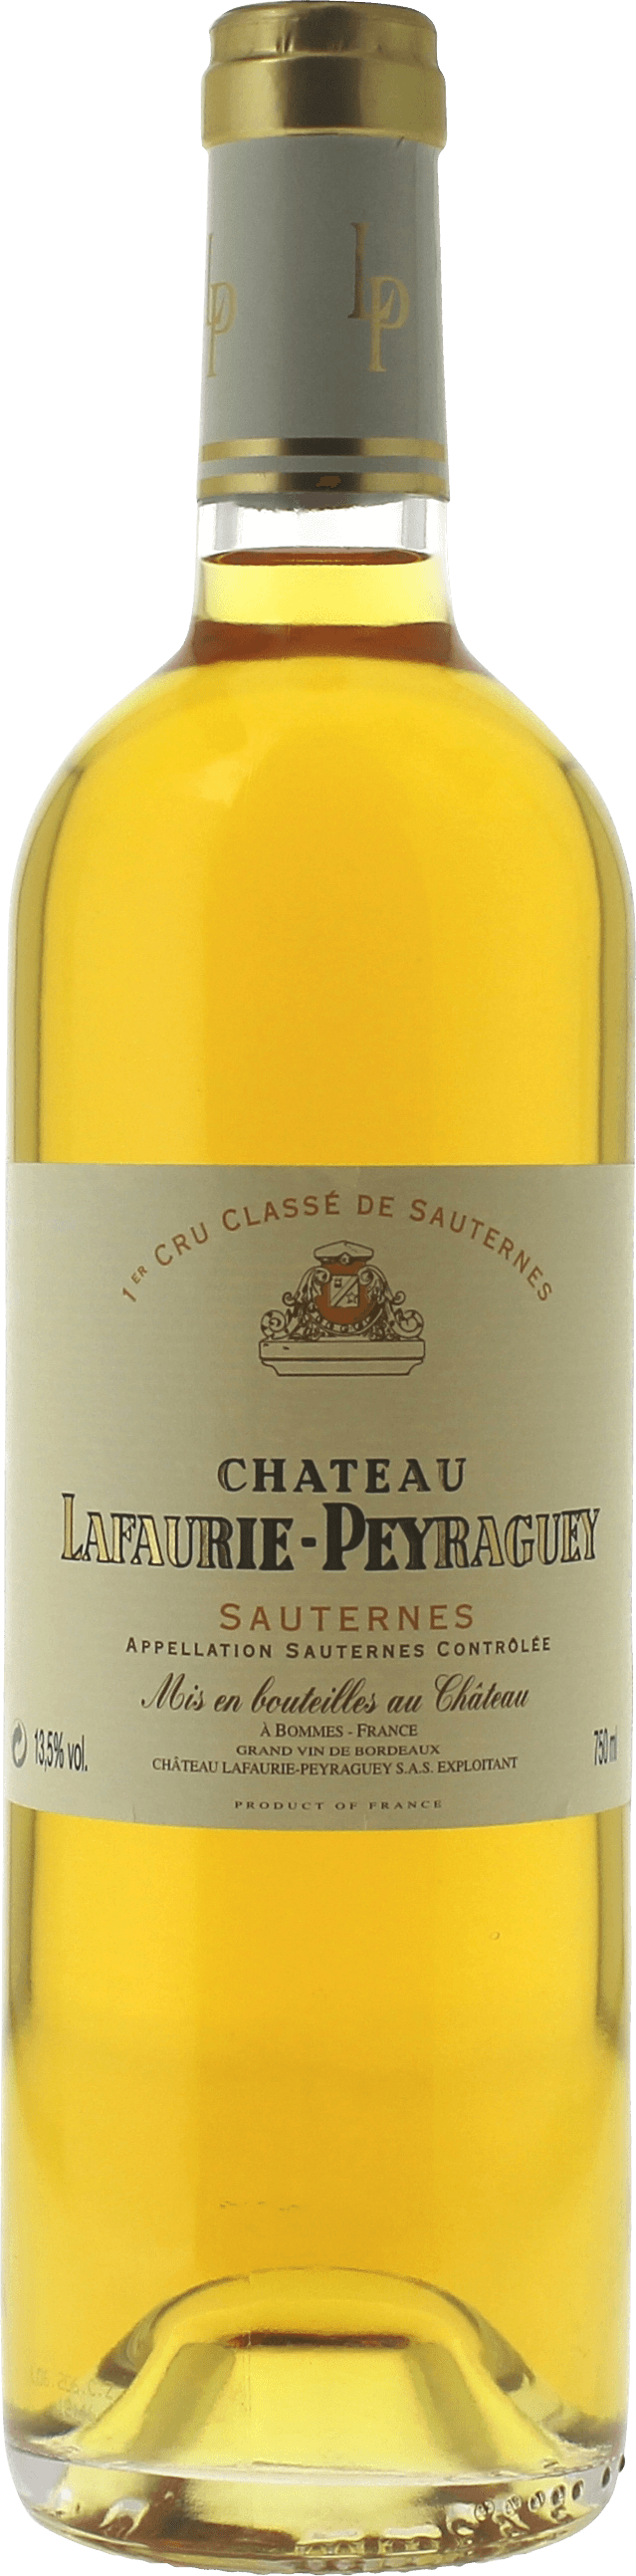 Lafaurie peyraguey 1988 1er cru Sauternes, Bordeaux blanc